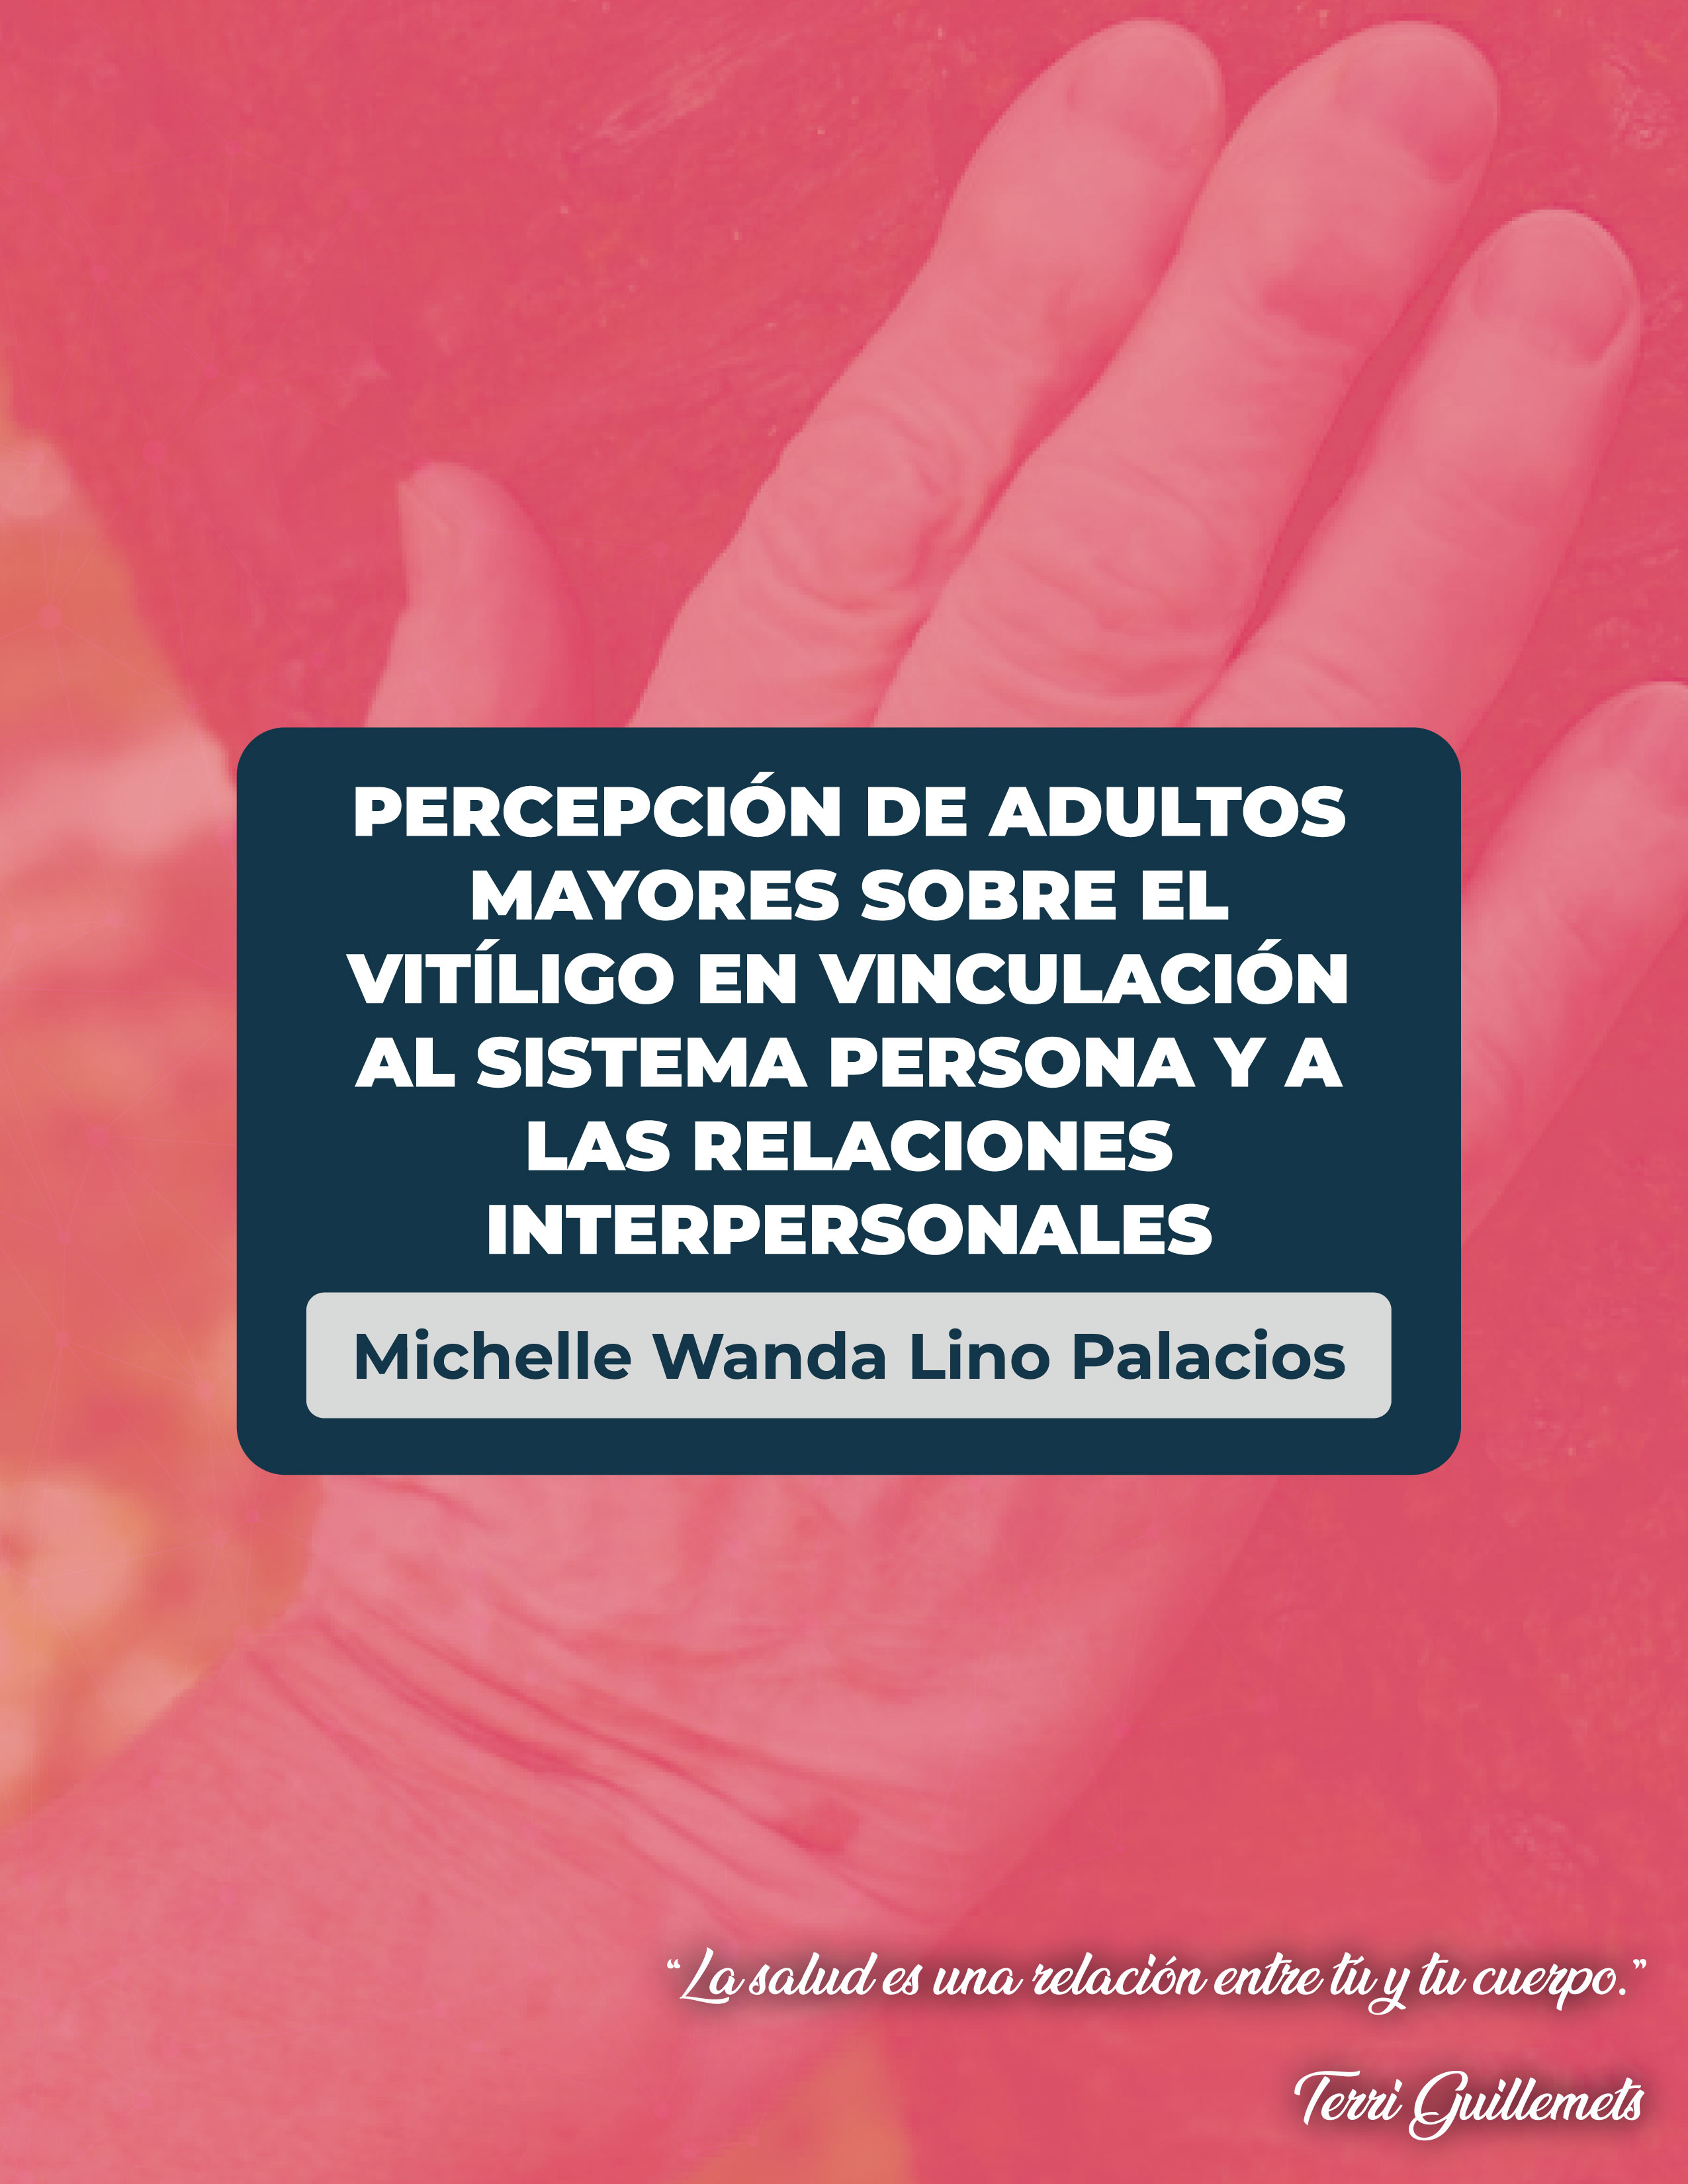 Percepción de adultos mayores sobre el vitíligo en vinculación al sistema persona y a las relaciones interpersonales